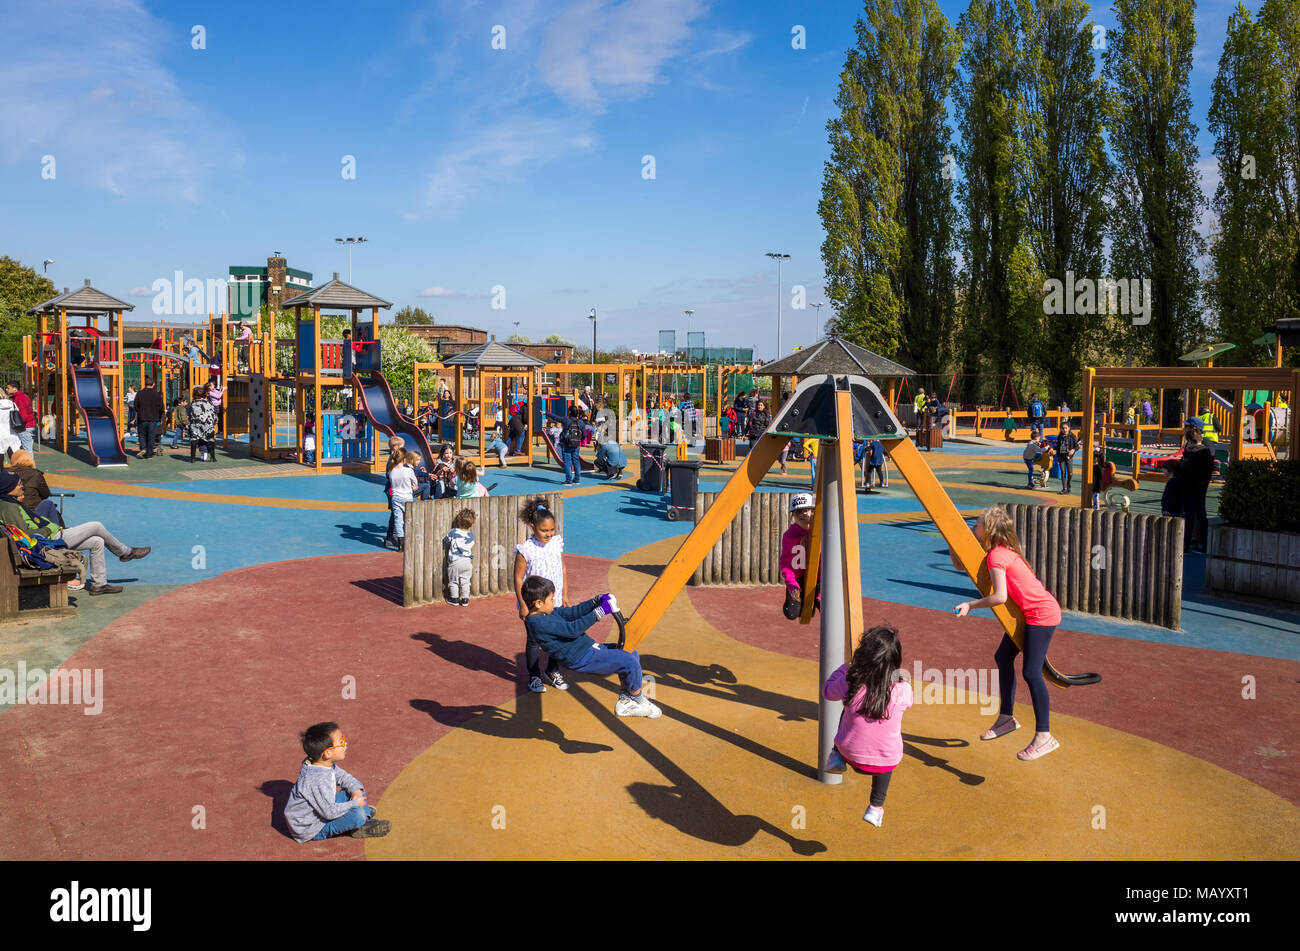 Parco giochi immagini e fotografie stock ad alta risoluzione - Alamy